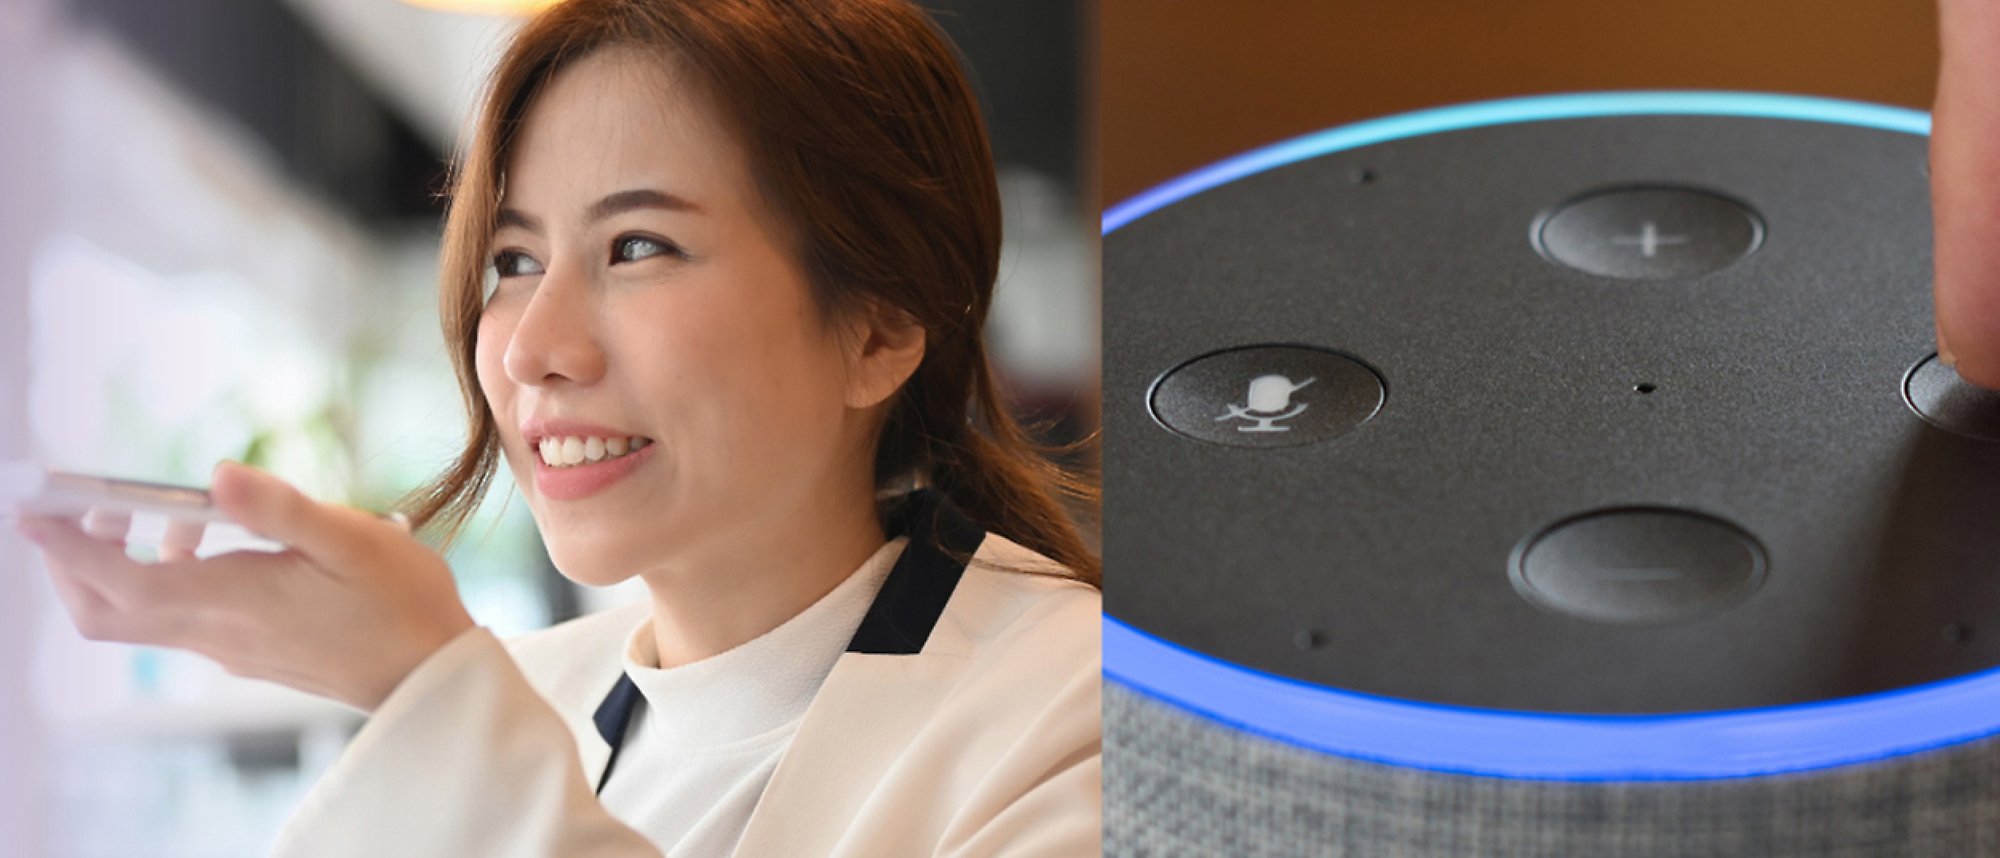 O femeie vorbind la un telefon și o imagine cu Amazon Alexa, cu lumini albastre și controale de sunet